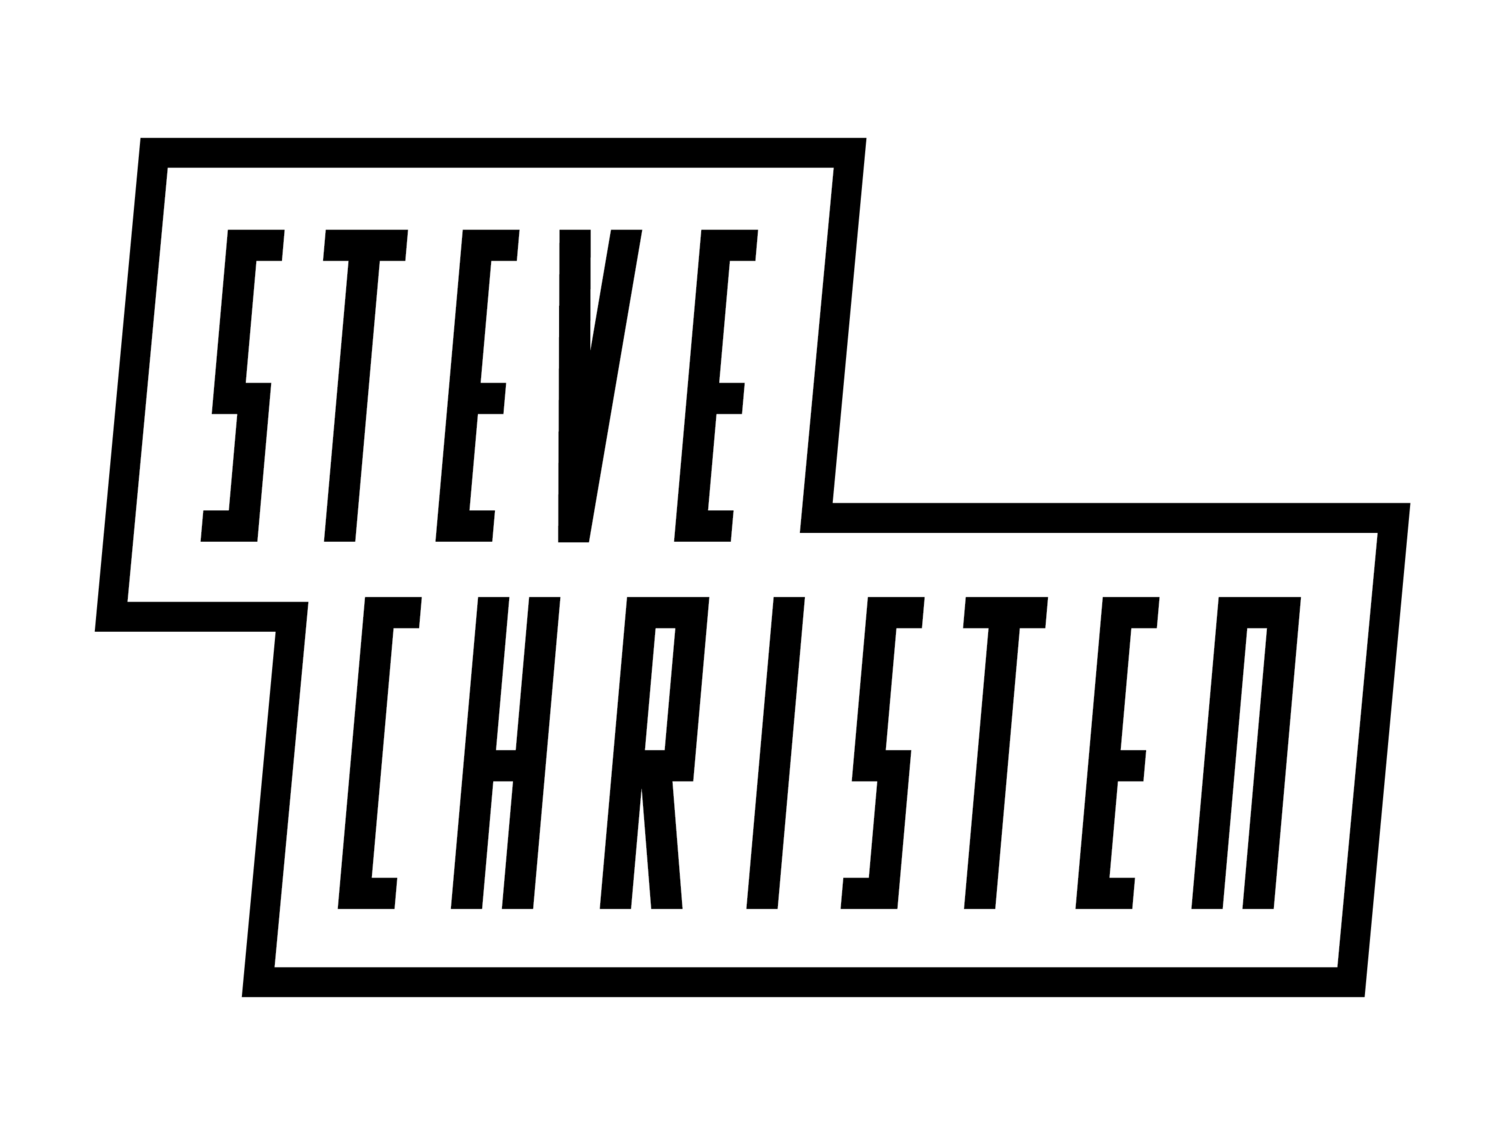 Steve Christen